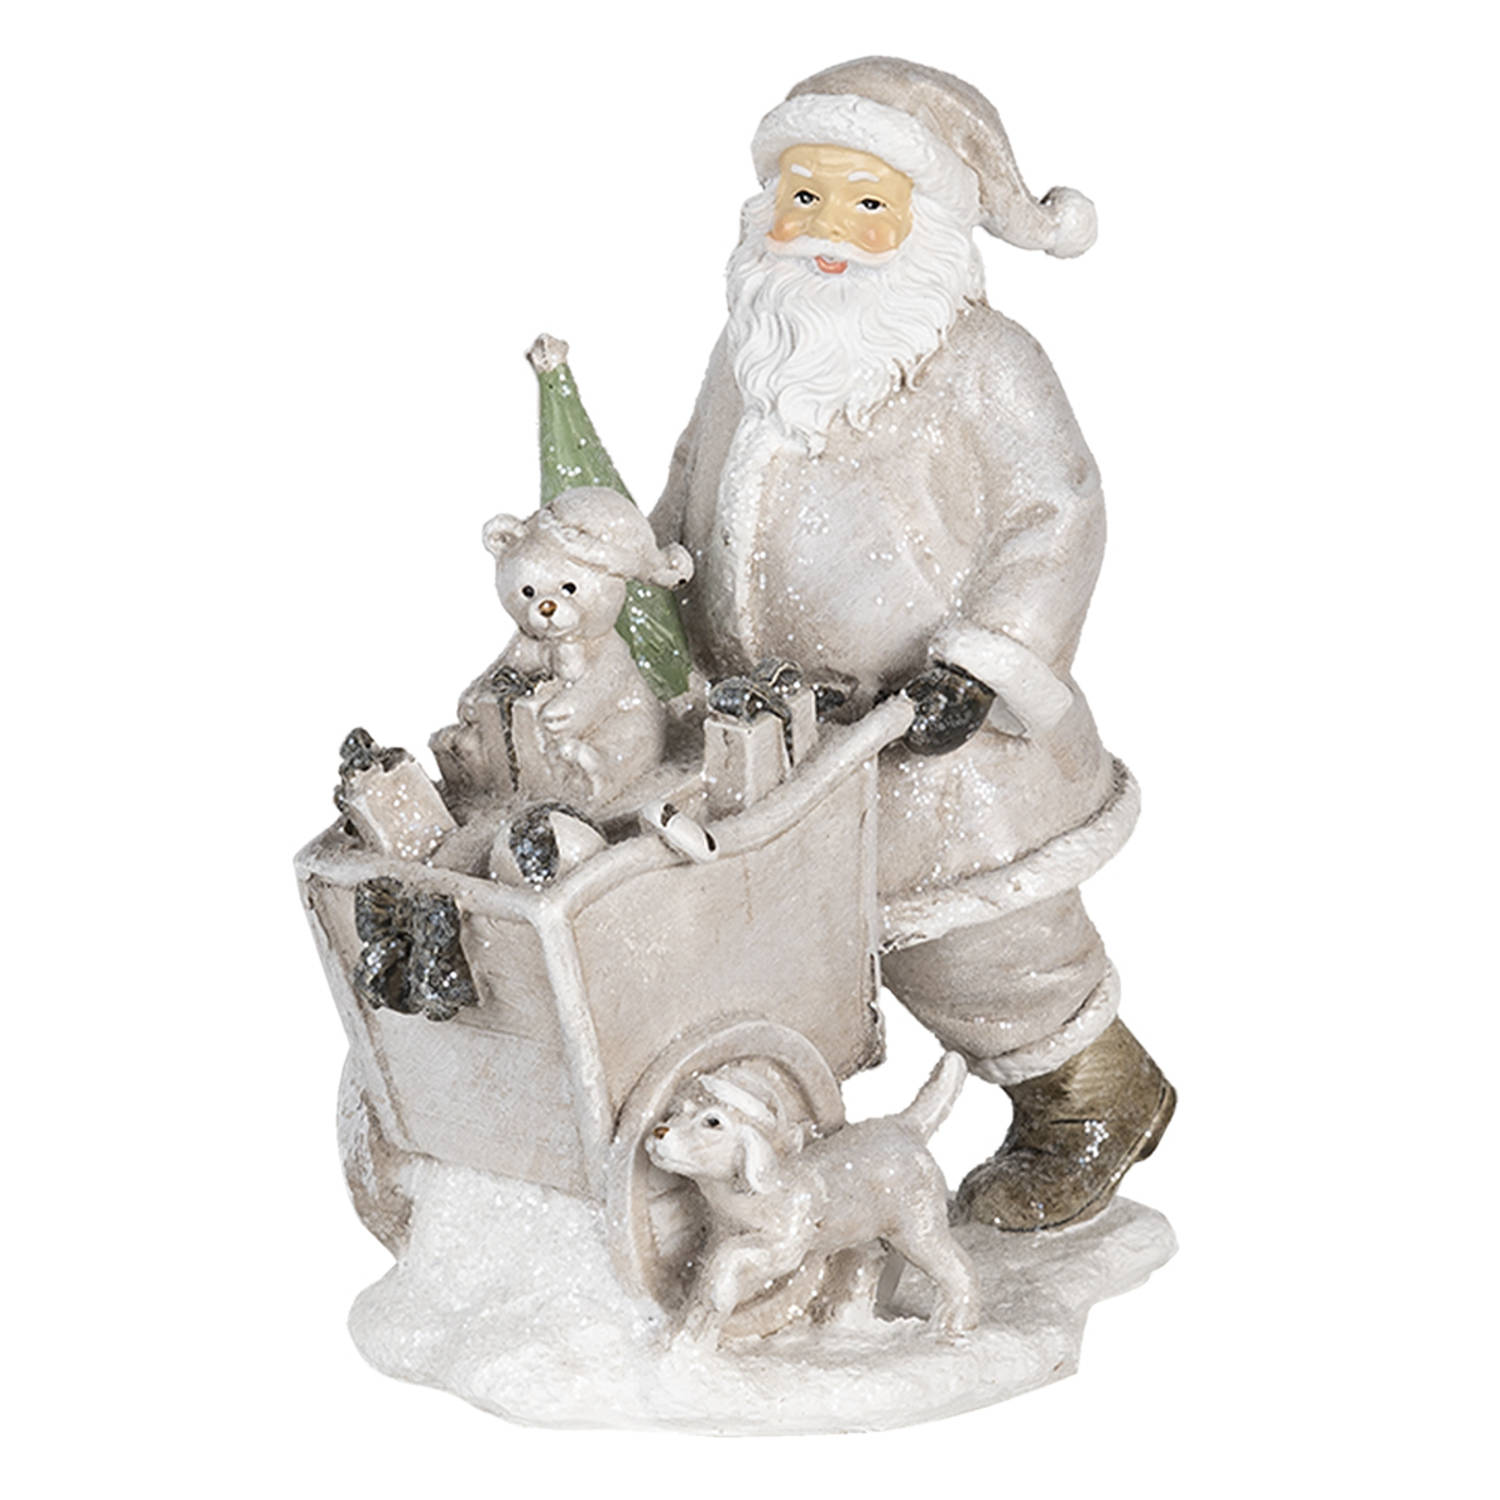 HAES DECO - Kerstman deco Figuur - Formaat 12x8x15 cm - Kleur Zilverkleurig - Materiaal Polyresin - Kerst Figuur, Kerstdecoratie